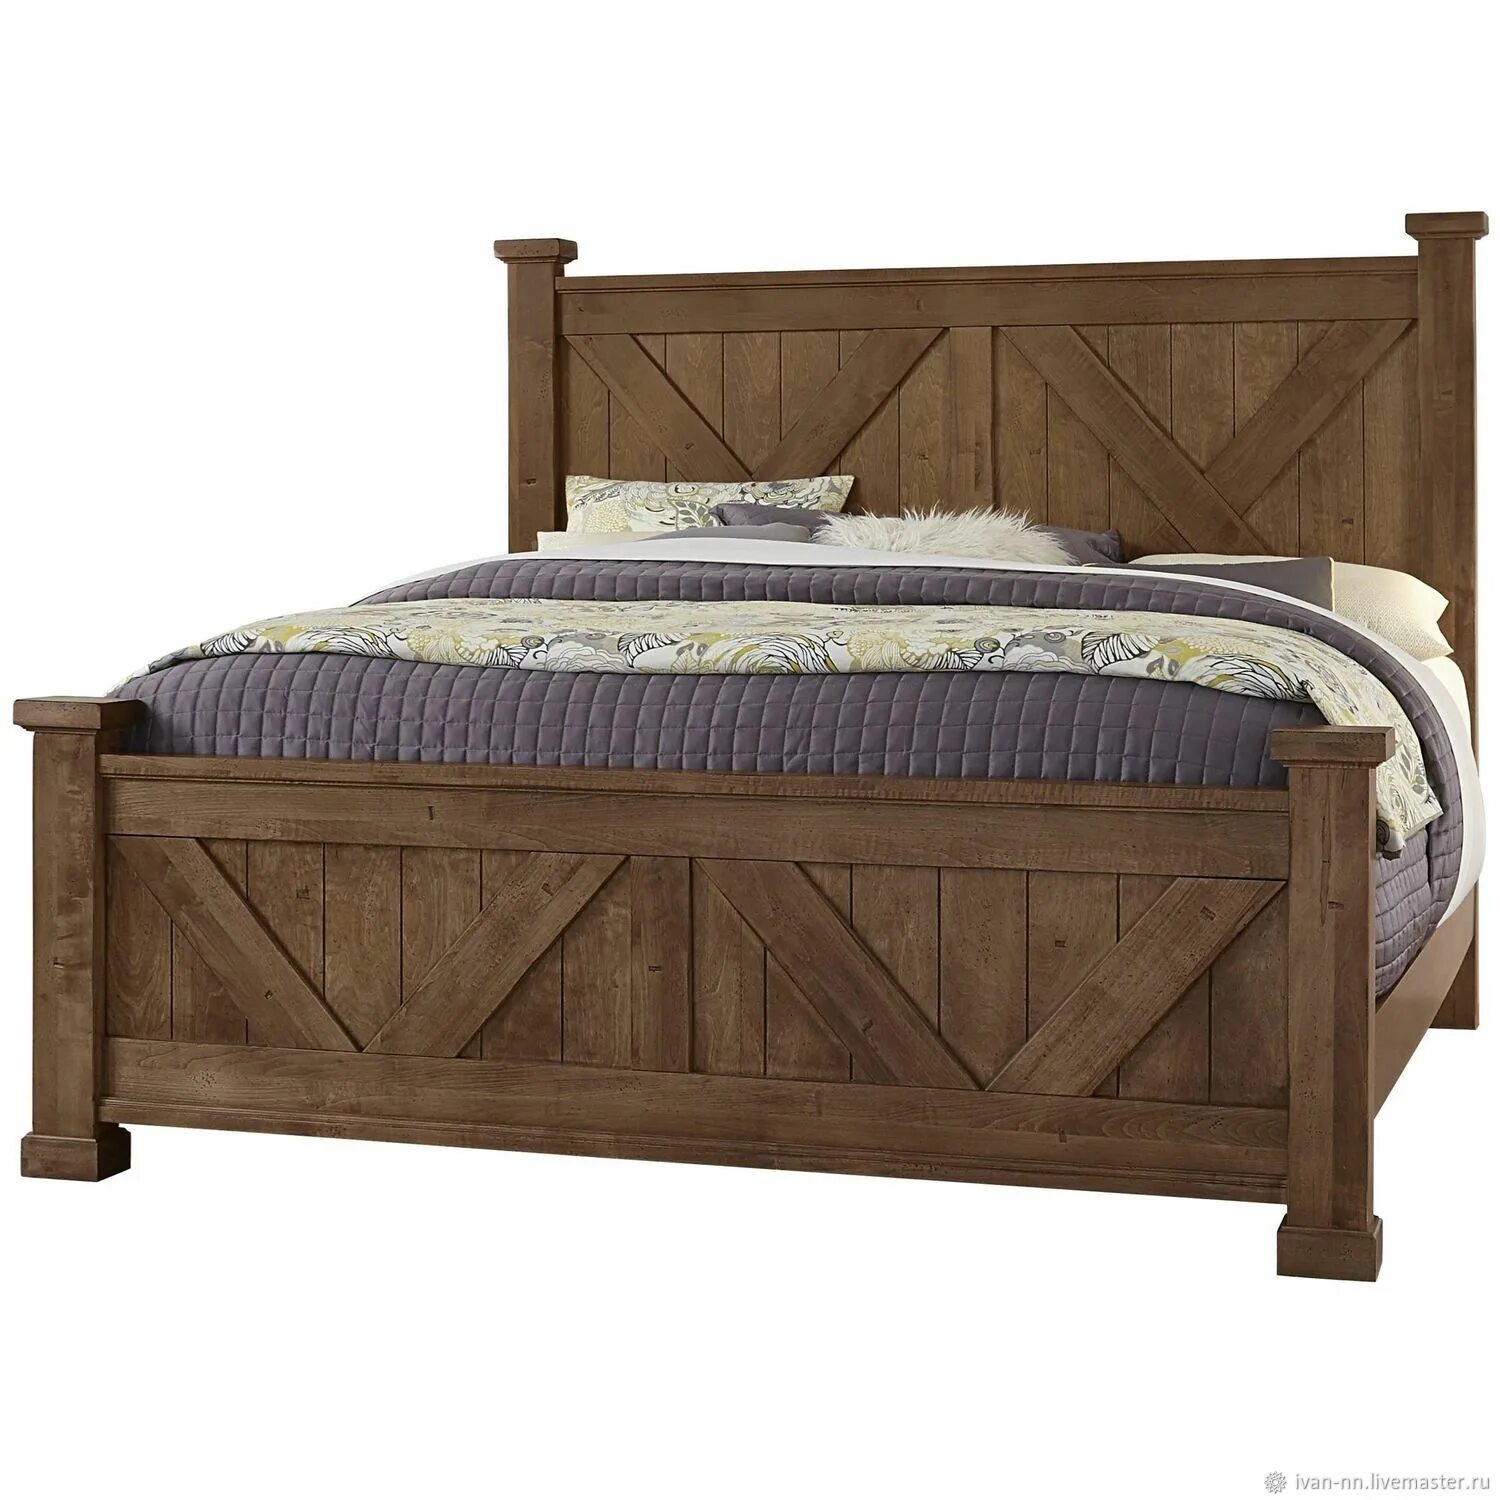 Купить деревянную кровать недорого. Кровать "Паула".массив дуба. Кровать Rino 180х200. Кровать деревянная. Кровать дерево.